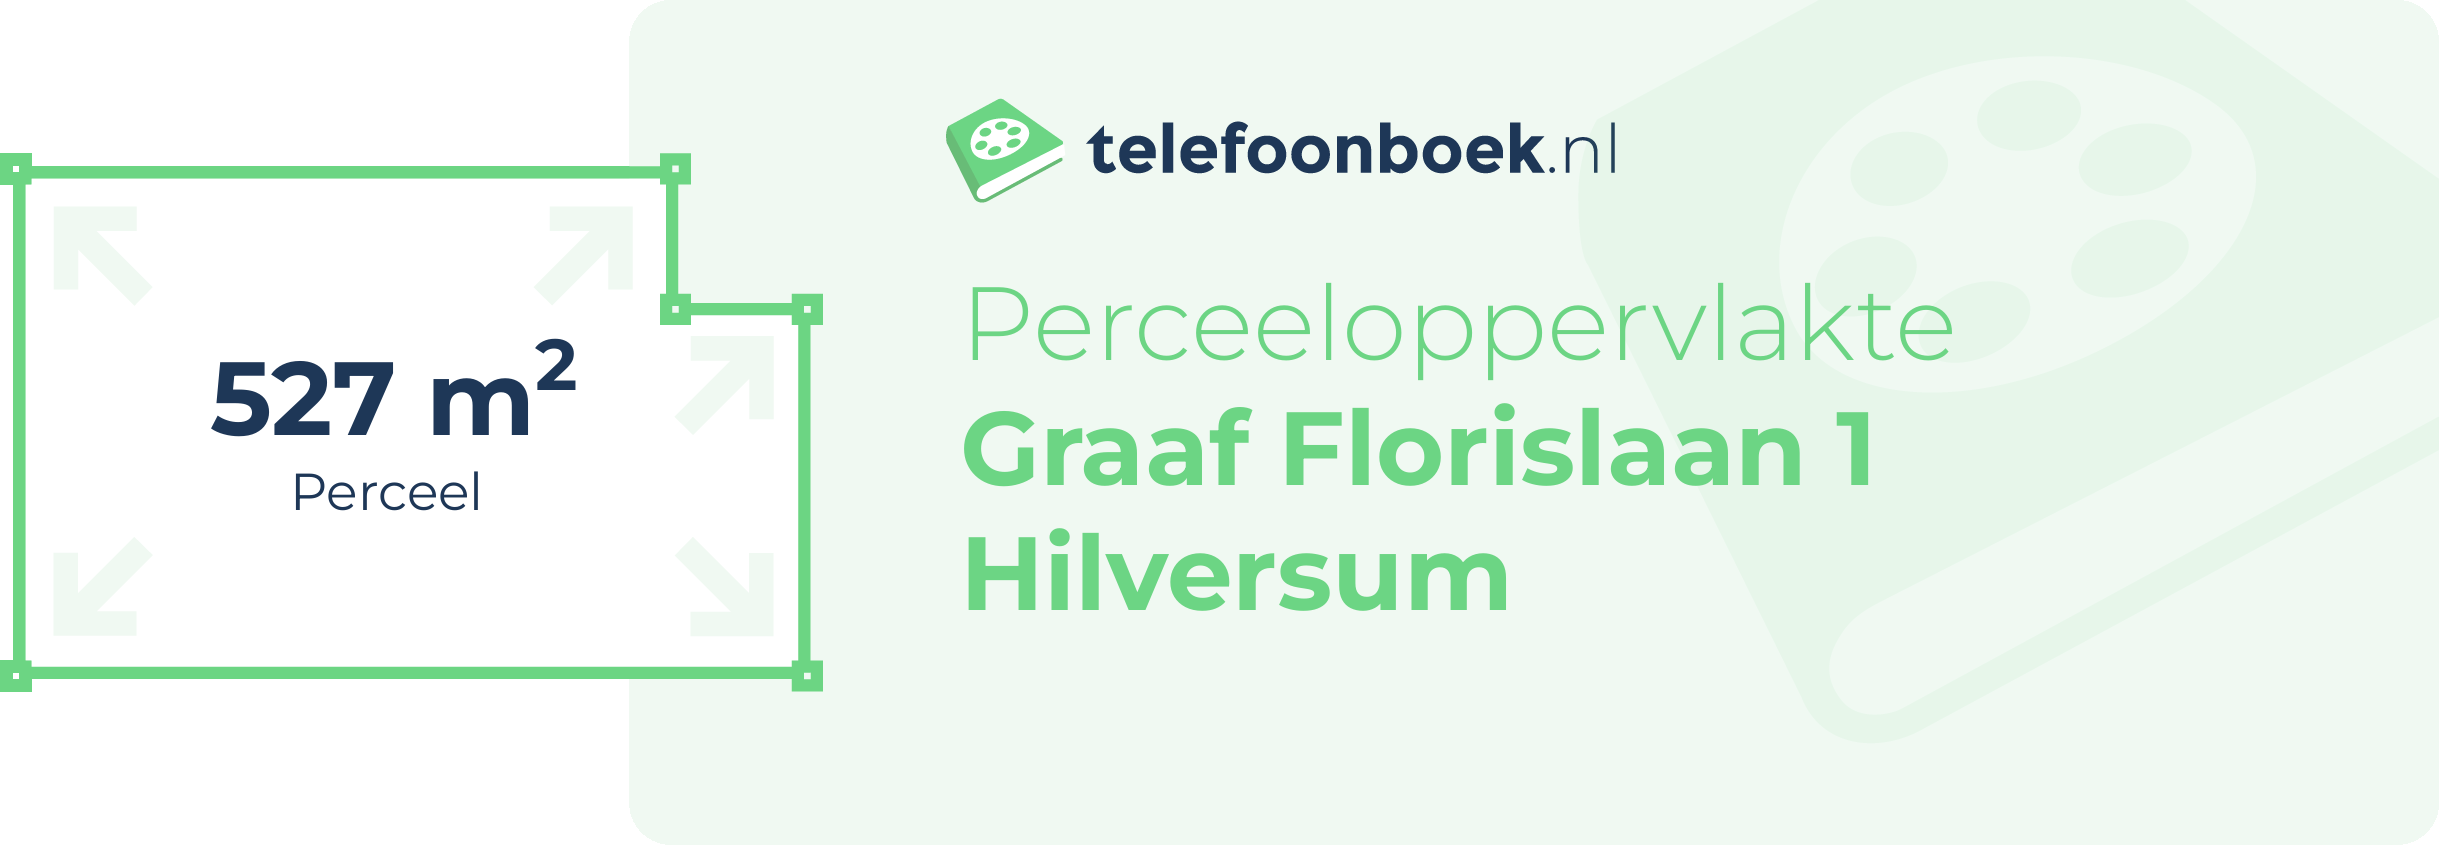 Perceeloppervlakte Graaf Florislaan 1 Hilversum